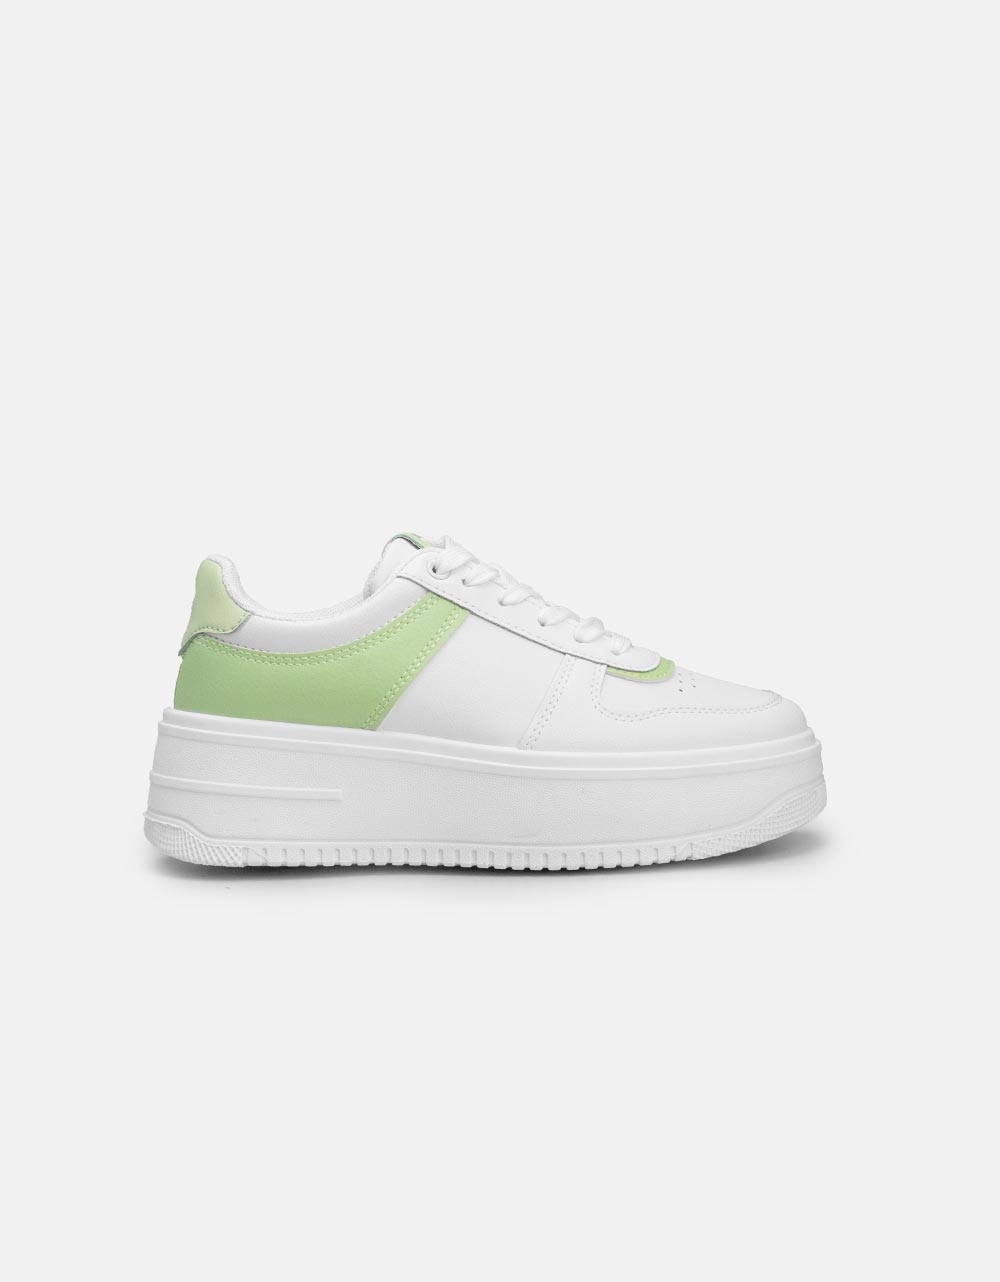 Εικόνα από Γυναικεία sneakers σε συνδυασμούς χρωμάτων Λευκό/Πράσινο